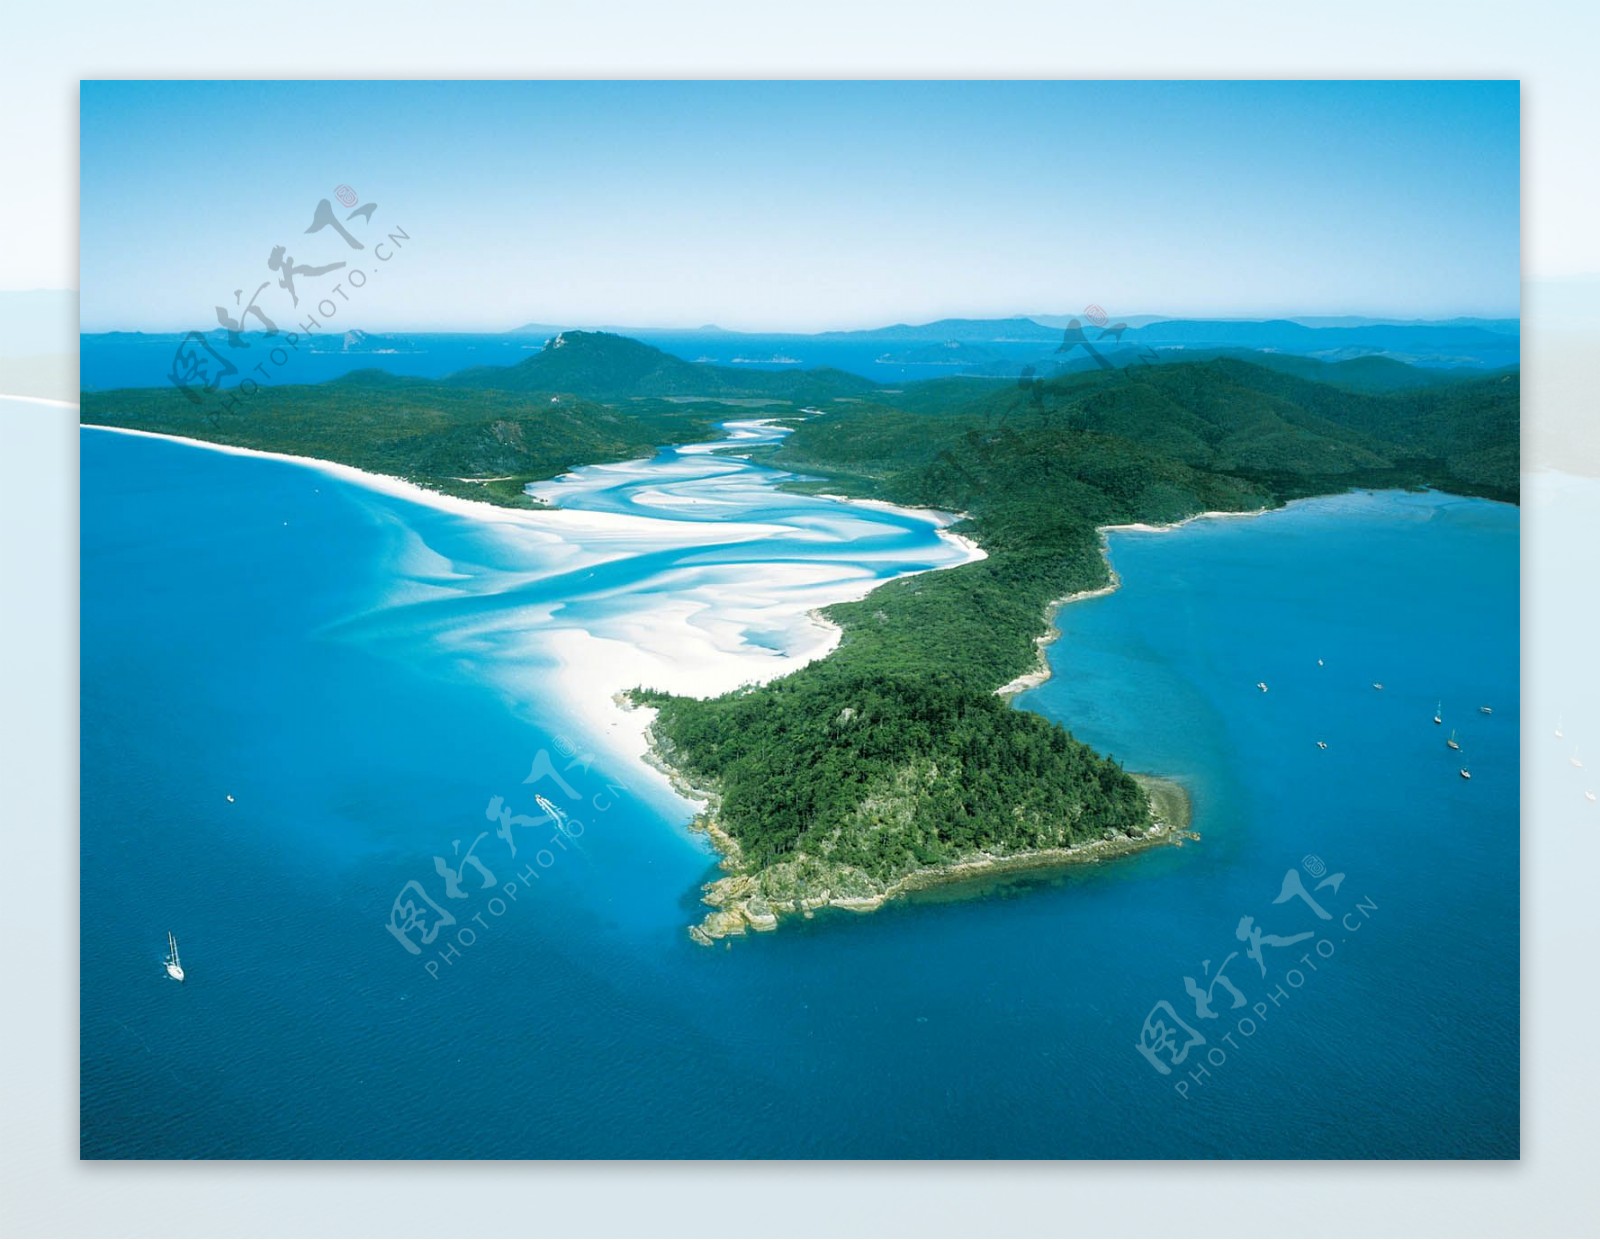 澳大利亚半岛海岸一景图片